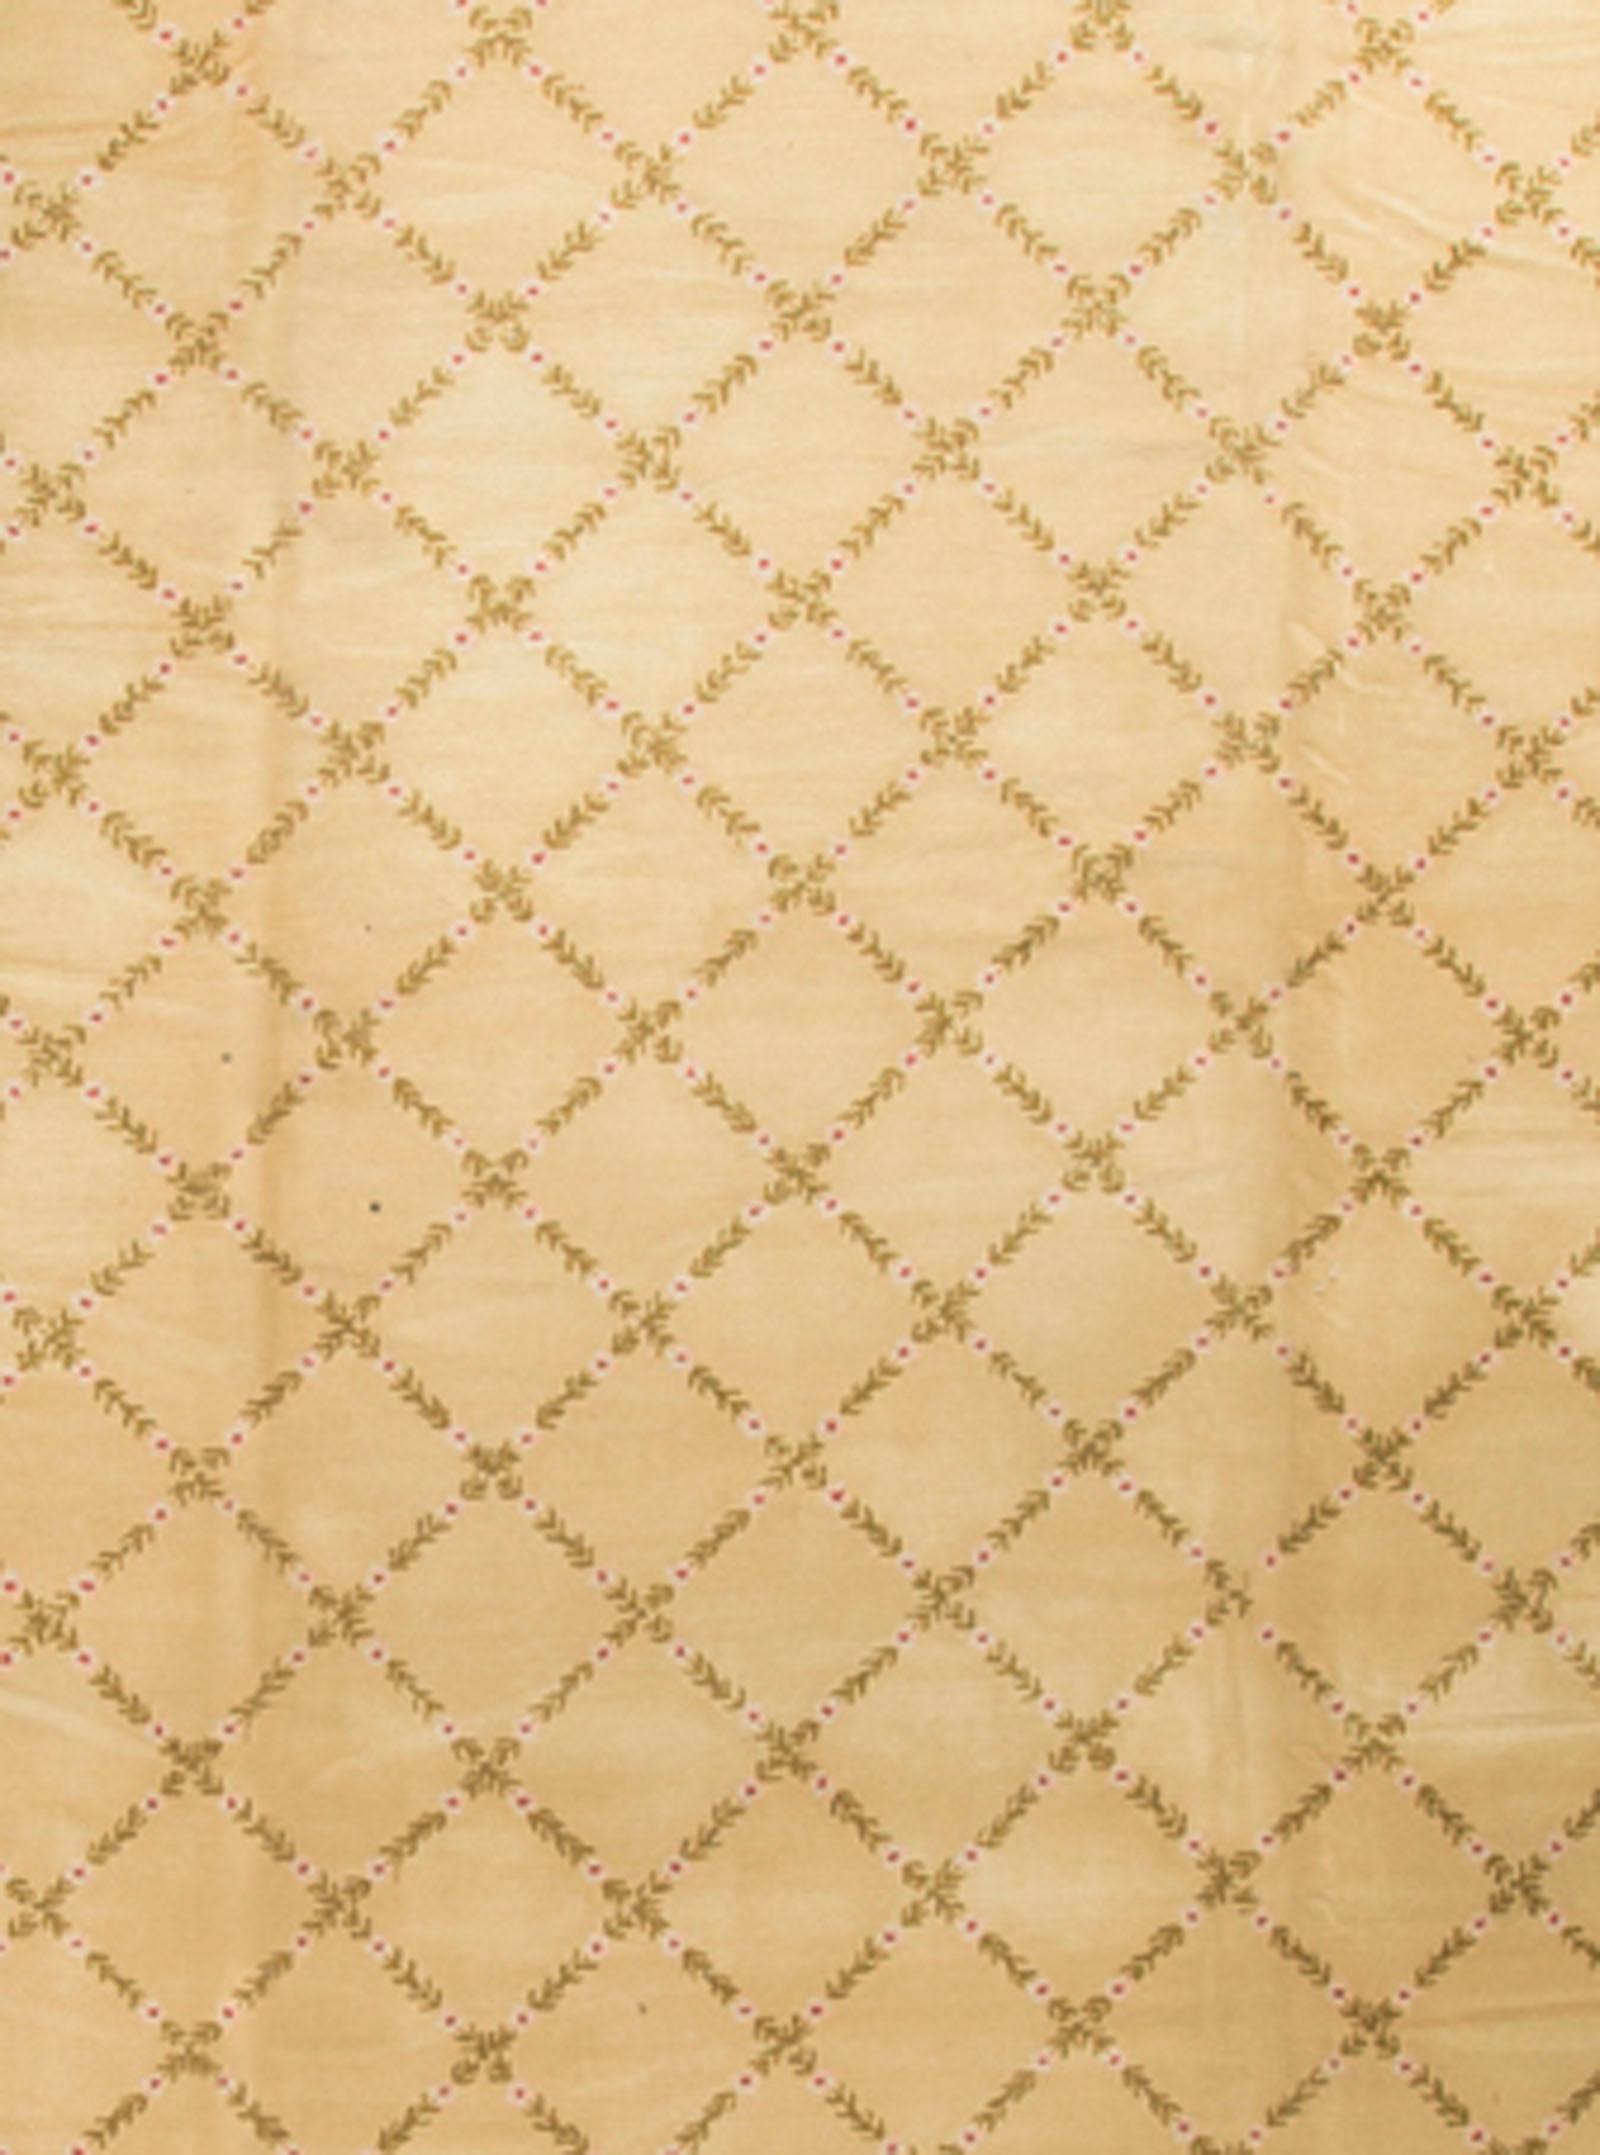 Tapis espagnol vintage surdimensionné. Un grand tapis vintage des années 1950 tissé à la main. Le champ central doux avec un motif hachuré est entouré d'une bordure d'un rouge doux qui met en valeur les couleurs centrales pâles. Taille : 12'9 x 21'6.